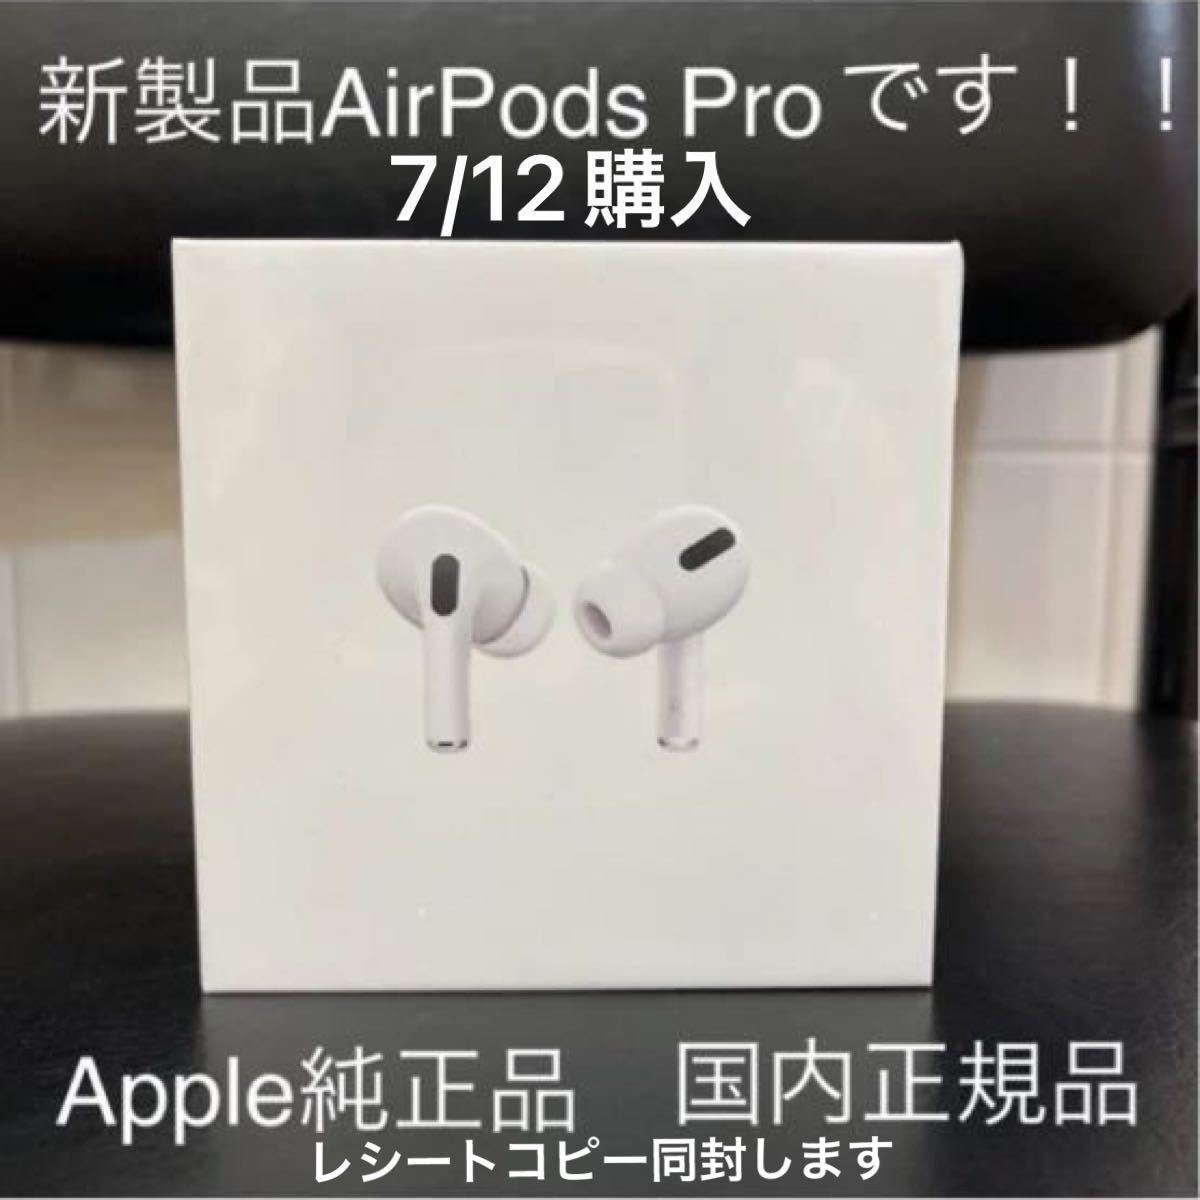 【保証書付】 【新品未開封シュリンク付】Apple 正規品レシート付 Pro AirPods イヤフォン